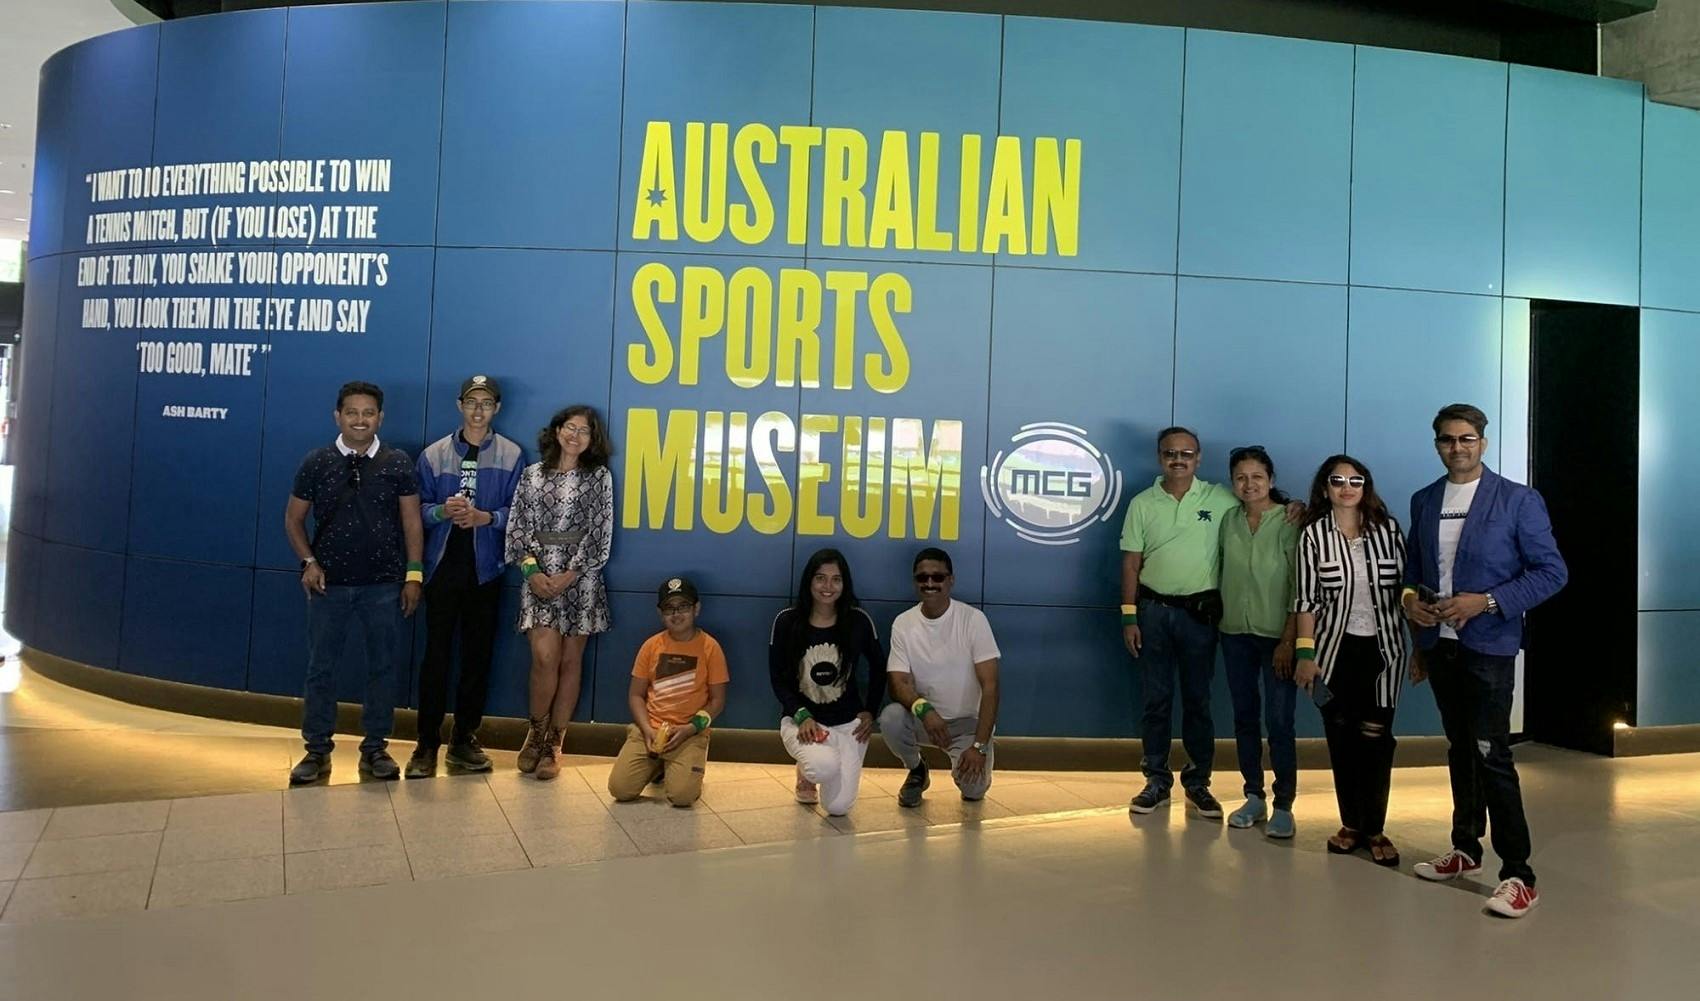 Tour pela área esportiva de Melbourne e Museu do Esporte Australiano